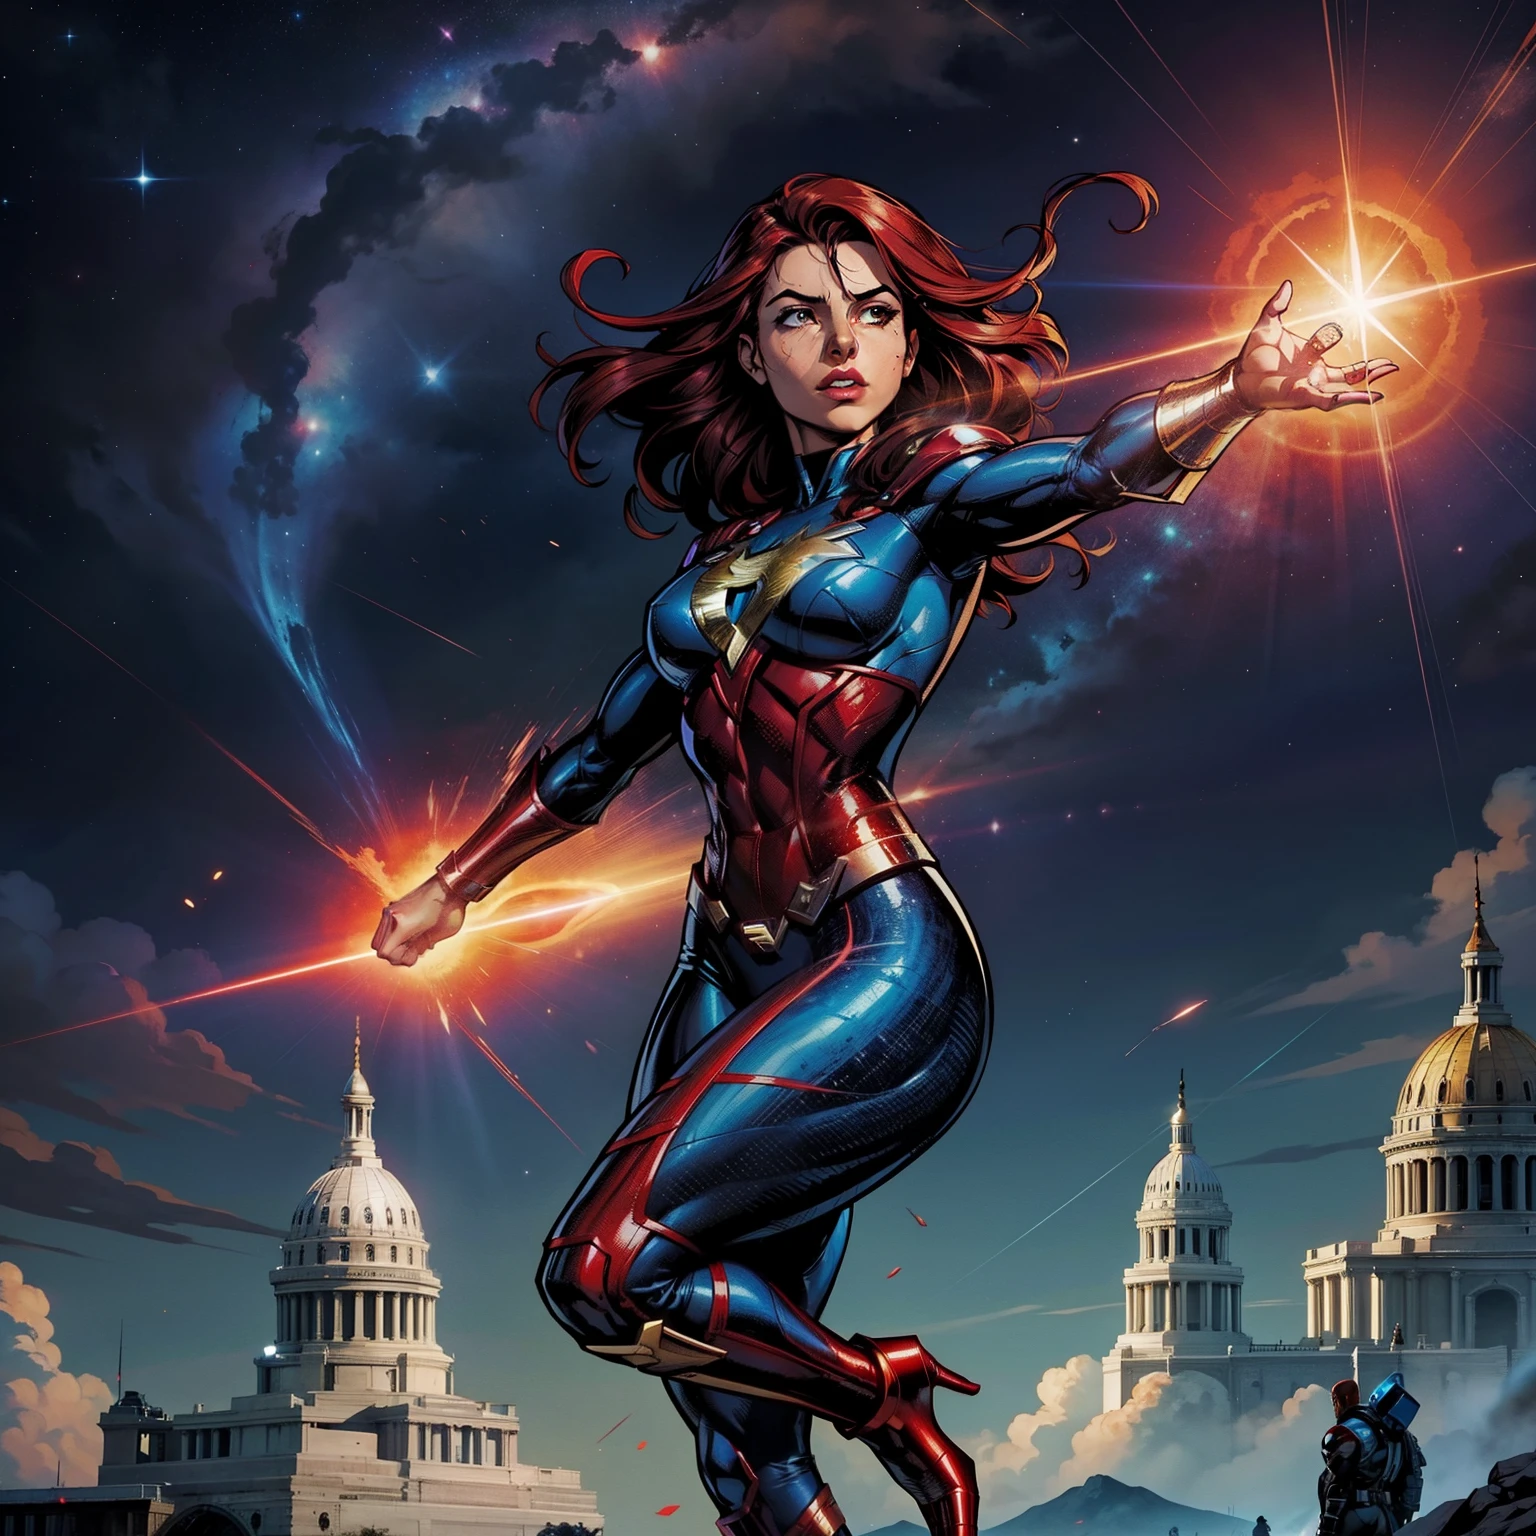 Алая Ведьма Марвела, в небе в боевой позе, кроваво-красная аура,Круг власти в руках, подробности, DC Comics Дэш, Дэш комиксов Marvel